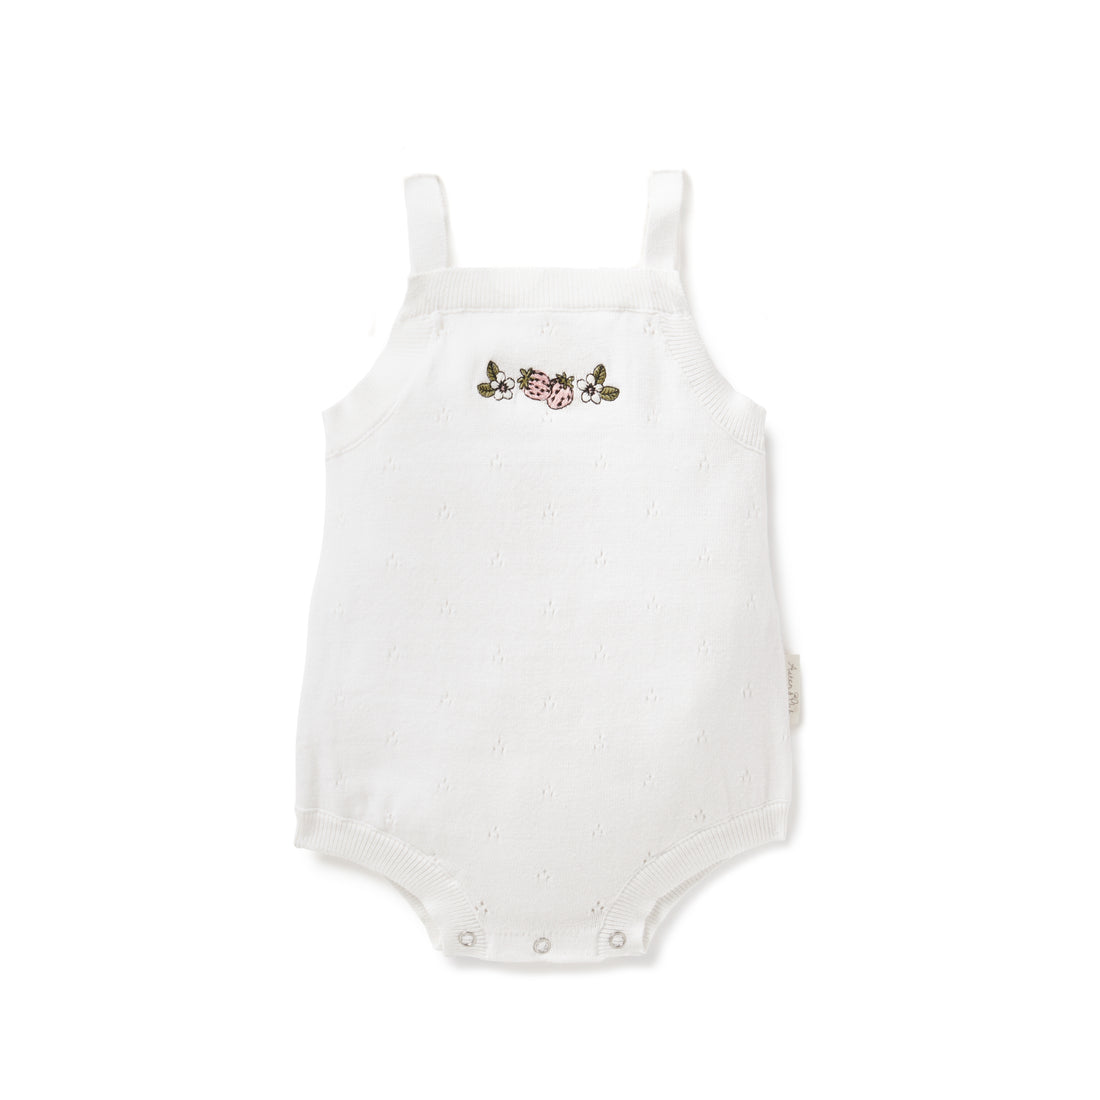 Baby Girls Strawberry White Pointelle Knitted Romper Bodysuit